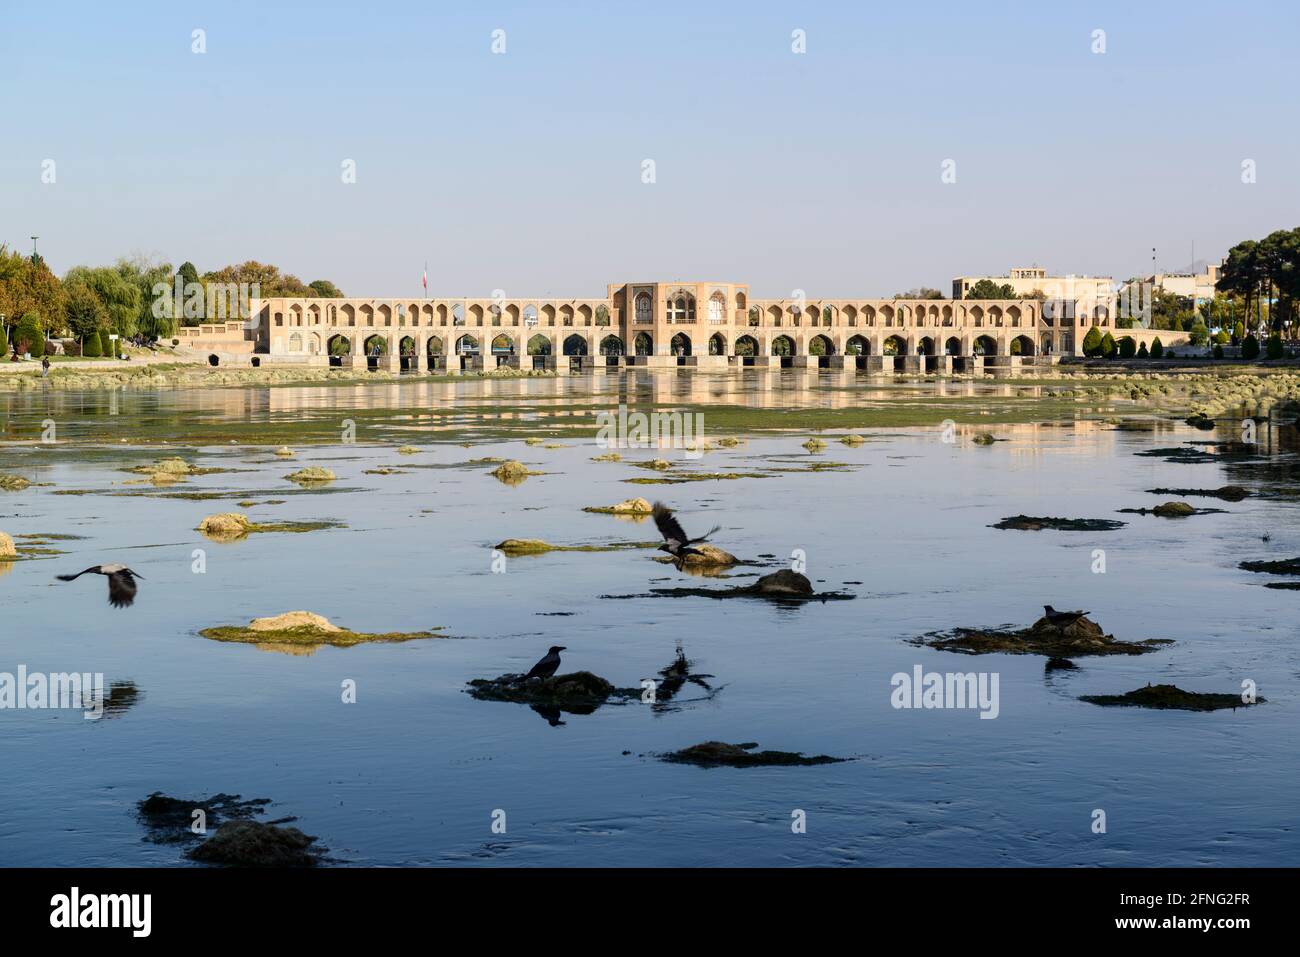 Des corneilles volant de petites îles en terre dans les eaux peu profondes de la rivière Zayanderud. Pont de Khaju en arrière-plan. Ispahan, Iran Banque D'Images